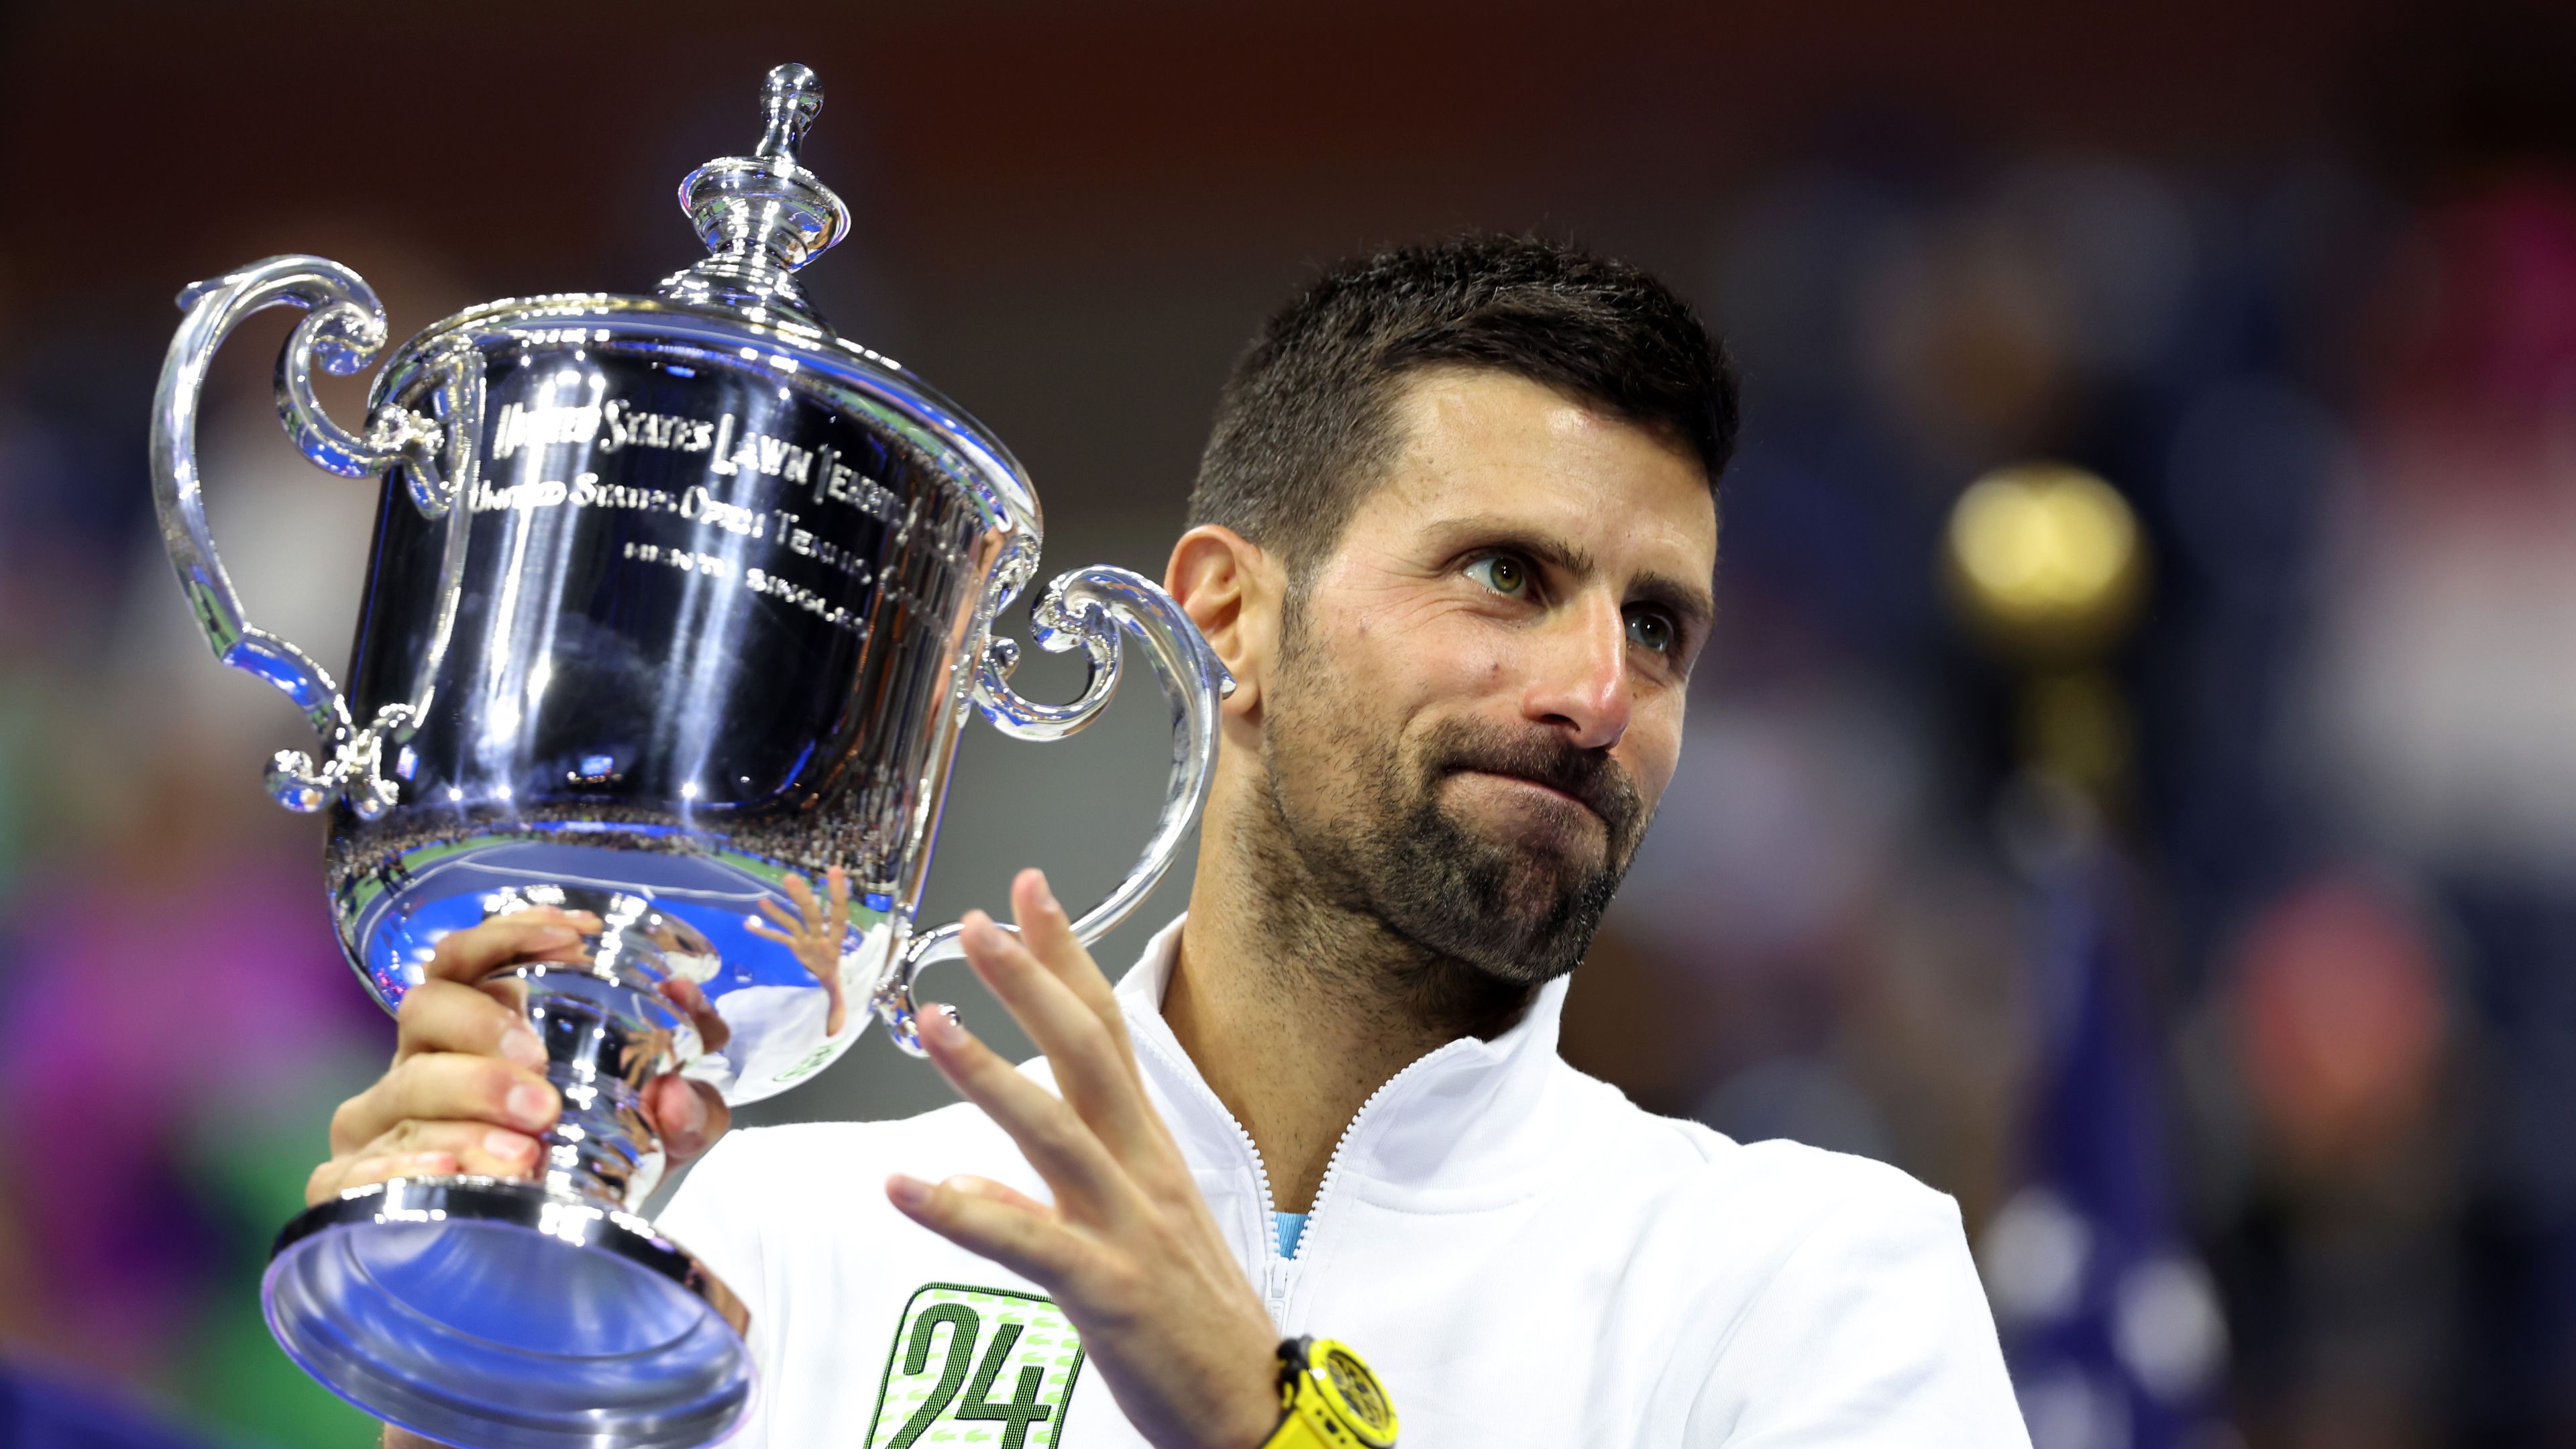 A történelmet író Djokovics még évekig uralhatja a férfi teniszt